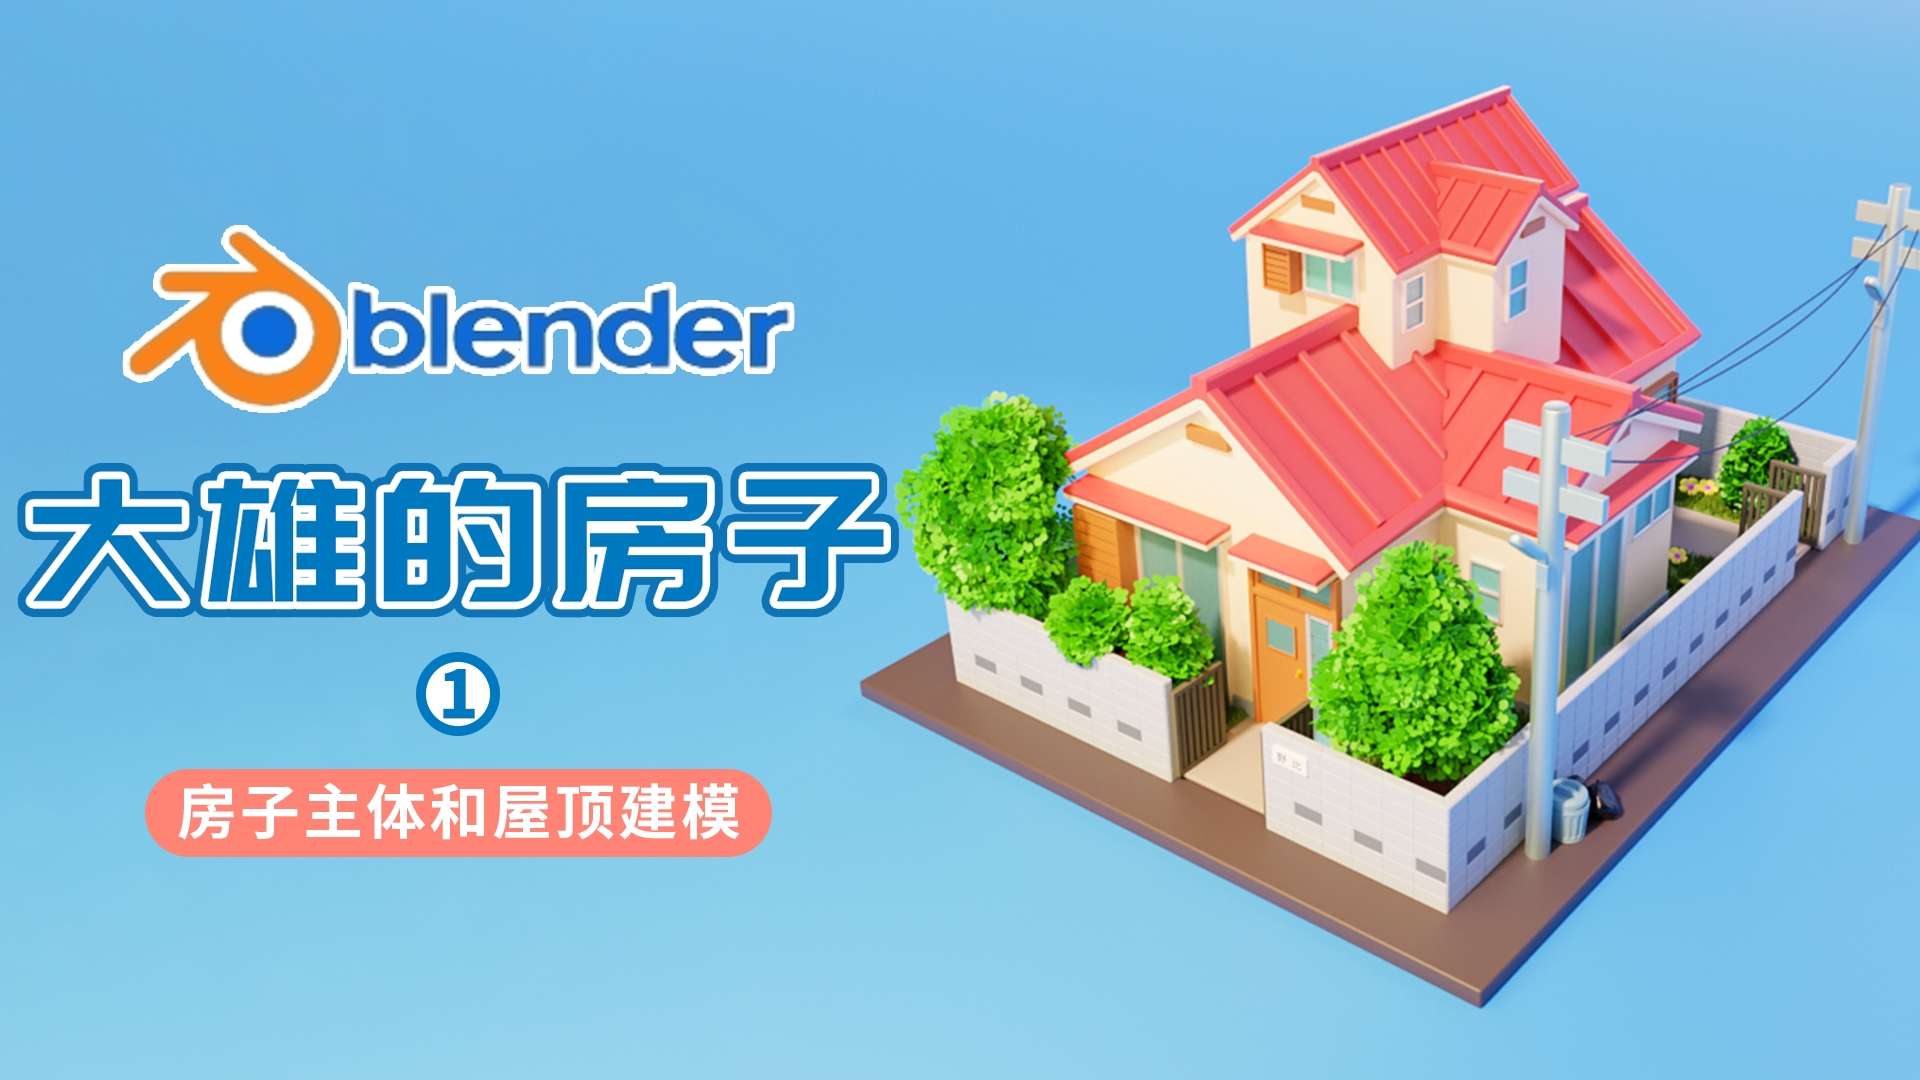 blender制作大雄的房子1——房子主体和屋顶建模